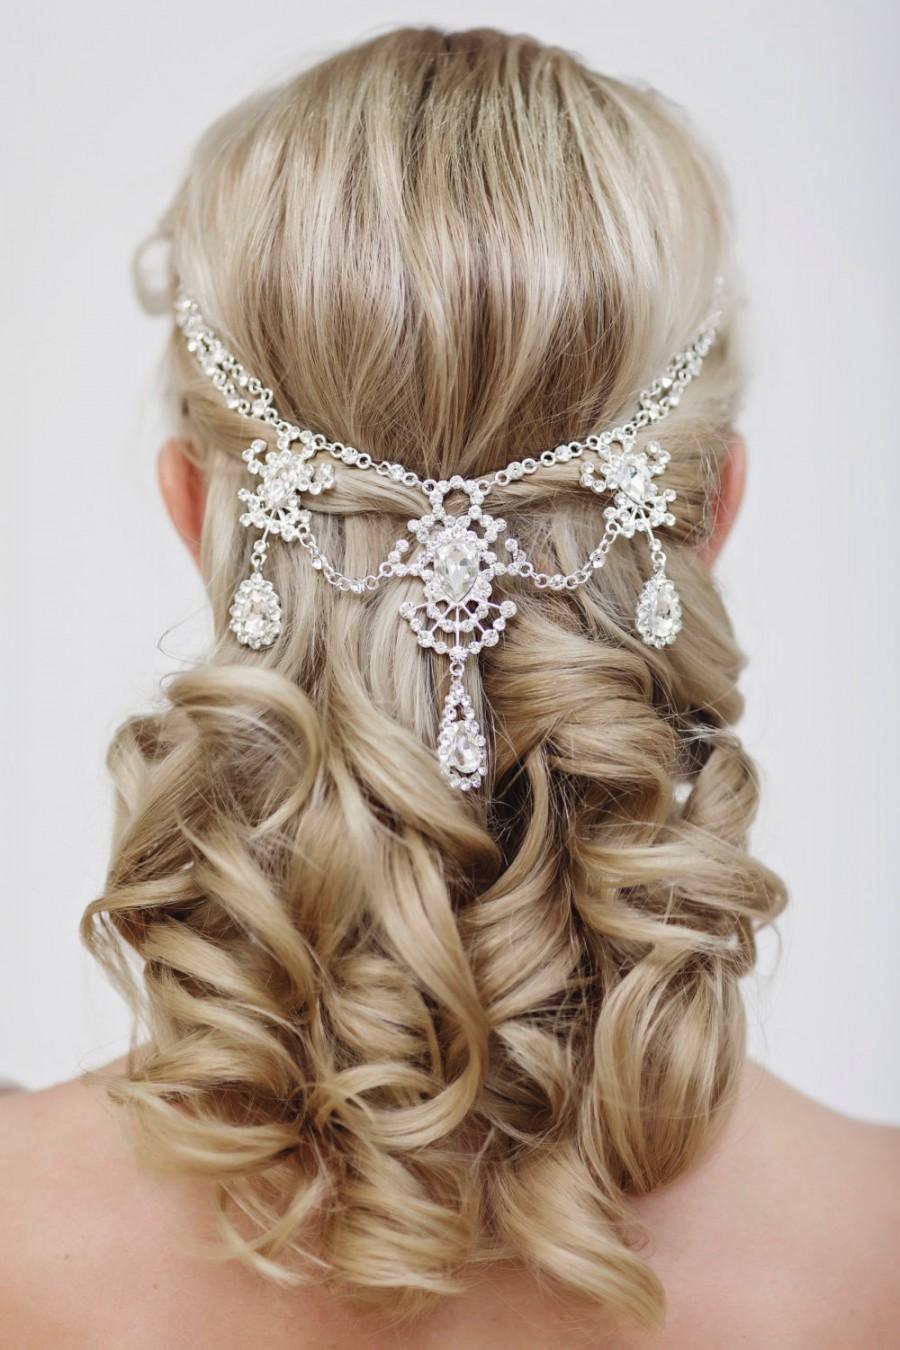 زفاف - Wedding Crystal Hair Accessories, Bridal Hair Jewelry, Crystal Bridal Headpiece, The Ellie silver hairfloater #303